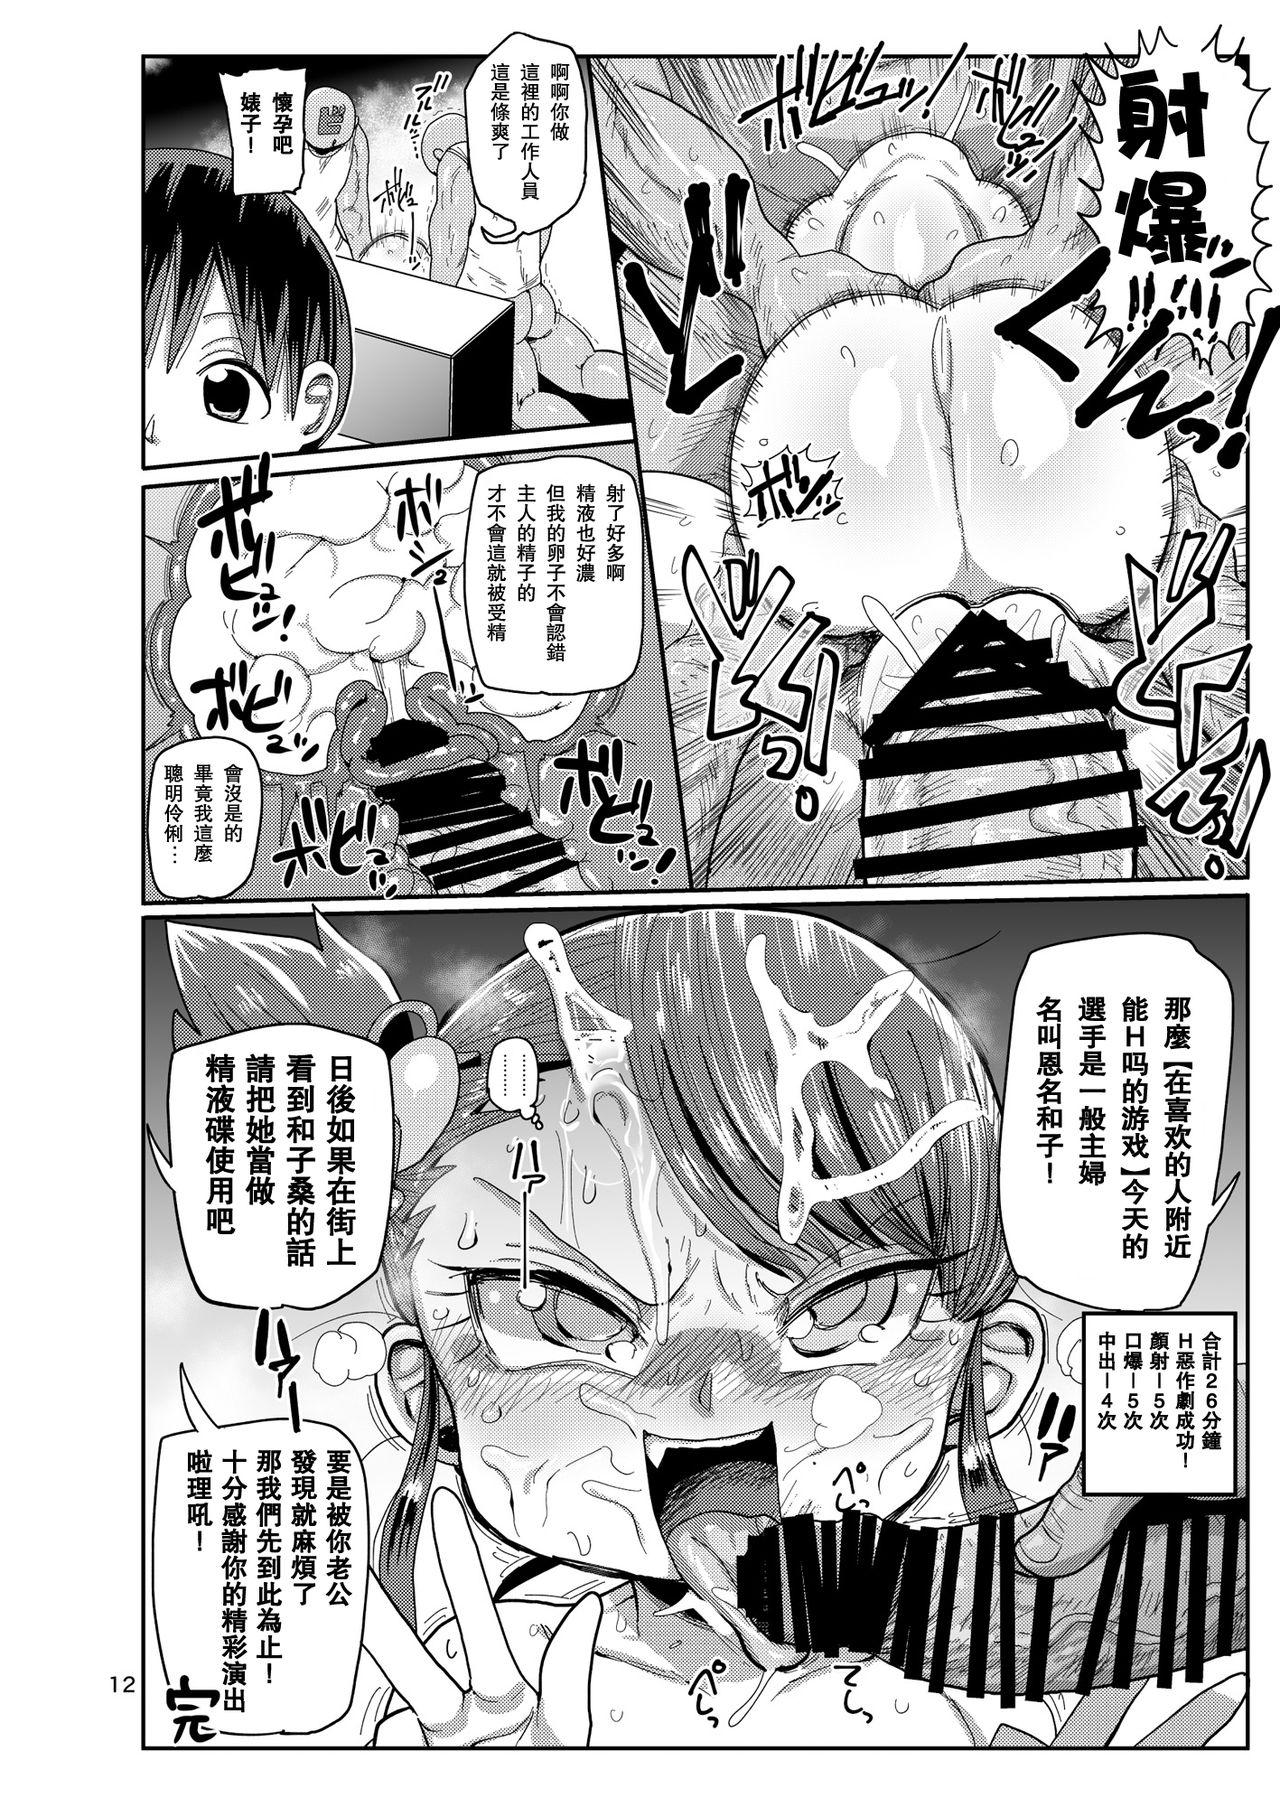 Daddy Watashi no Mawari ni wa Kiken ga Ippai! - Original Furry - Page 11